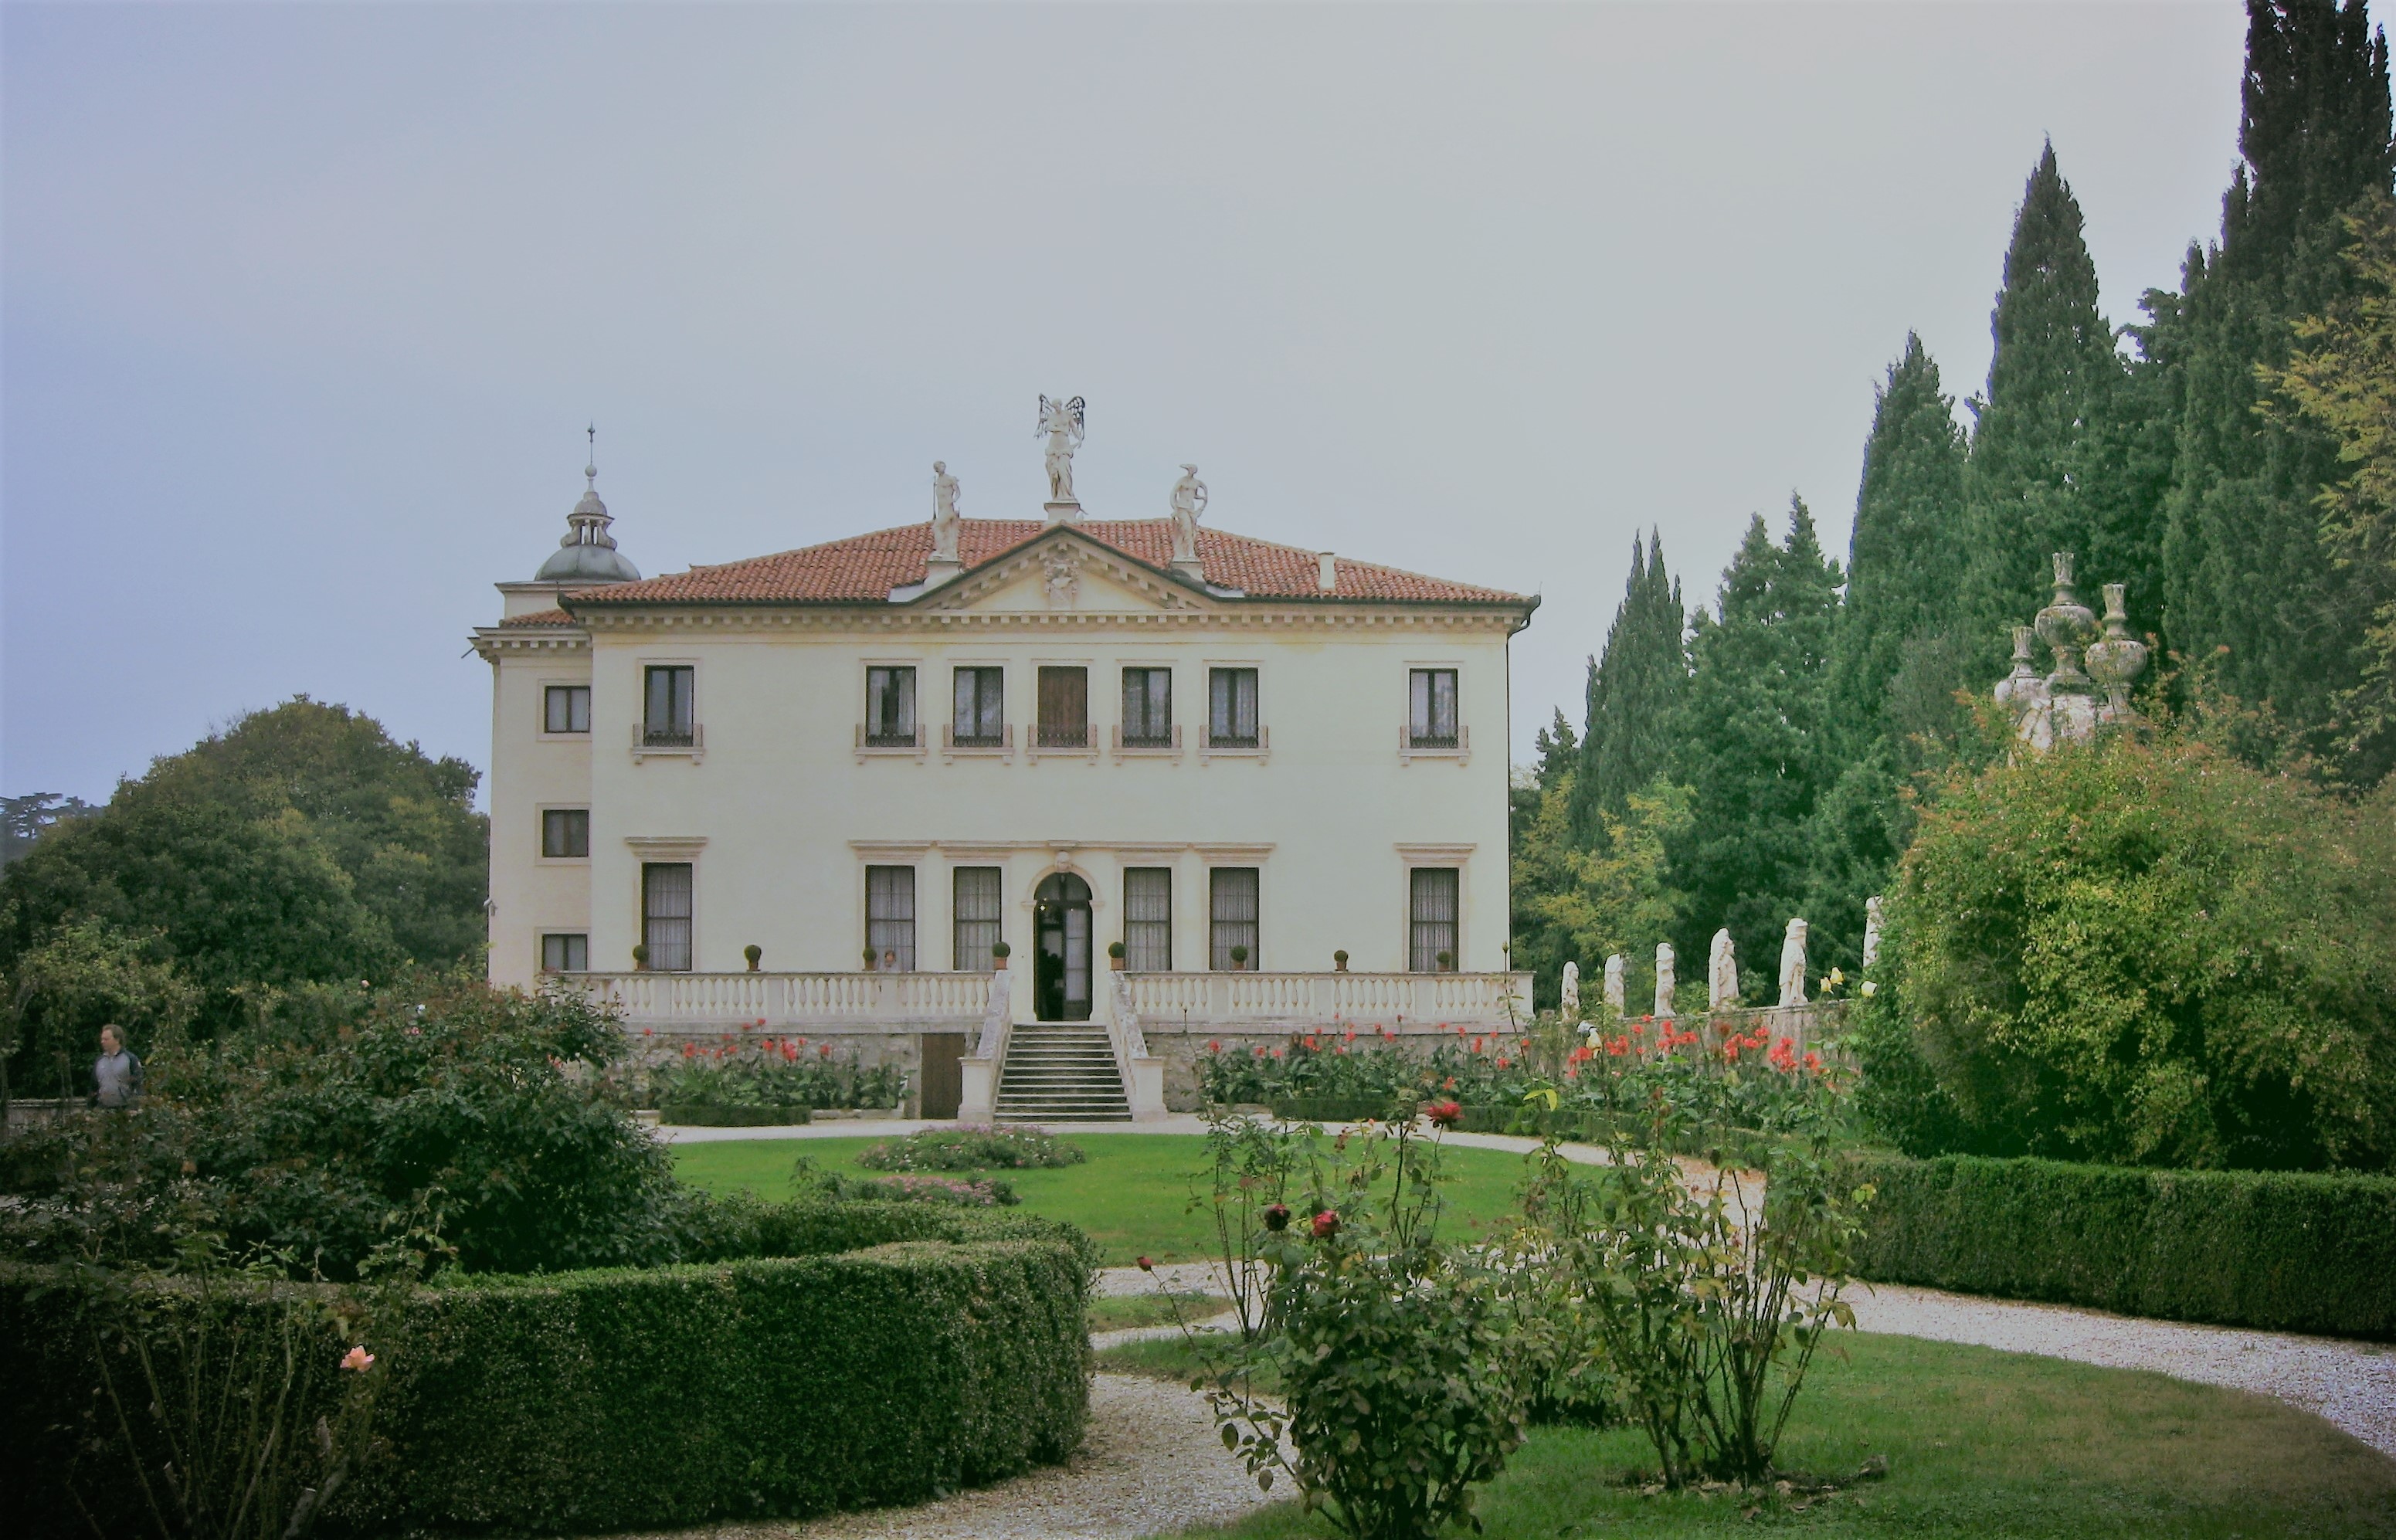 Villa Valmarana "Ai Nani"